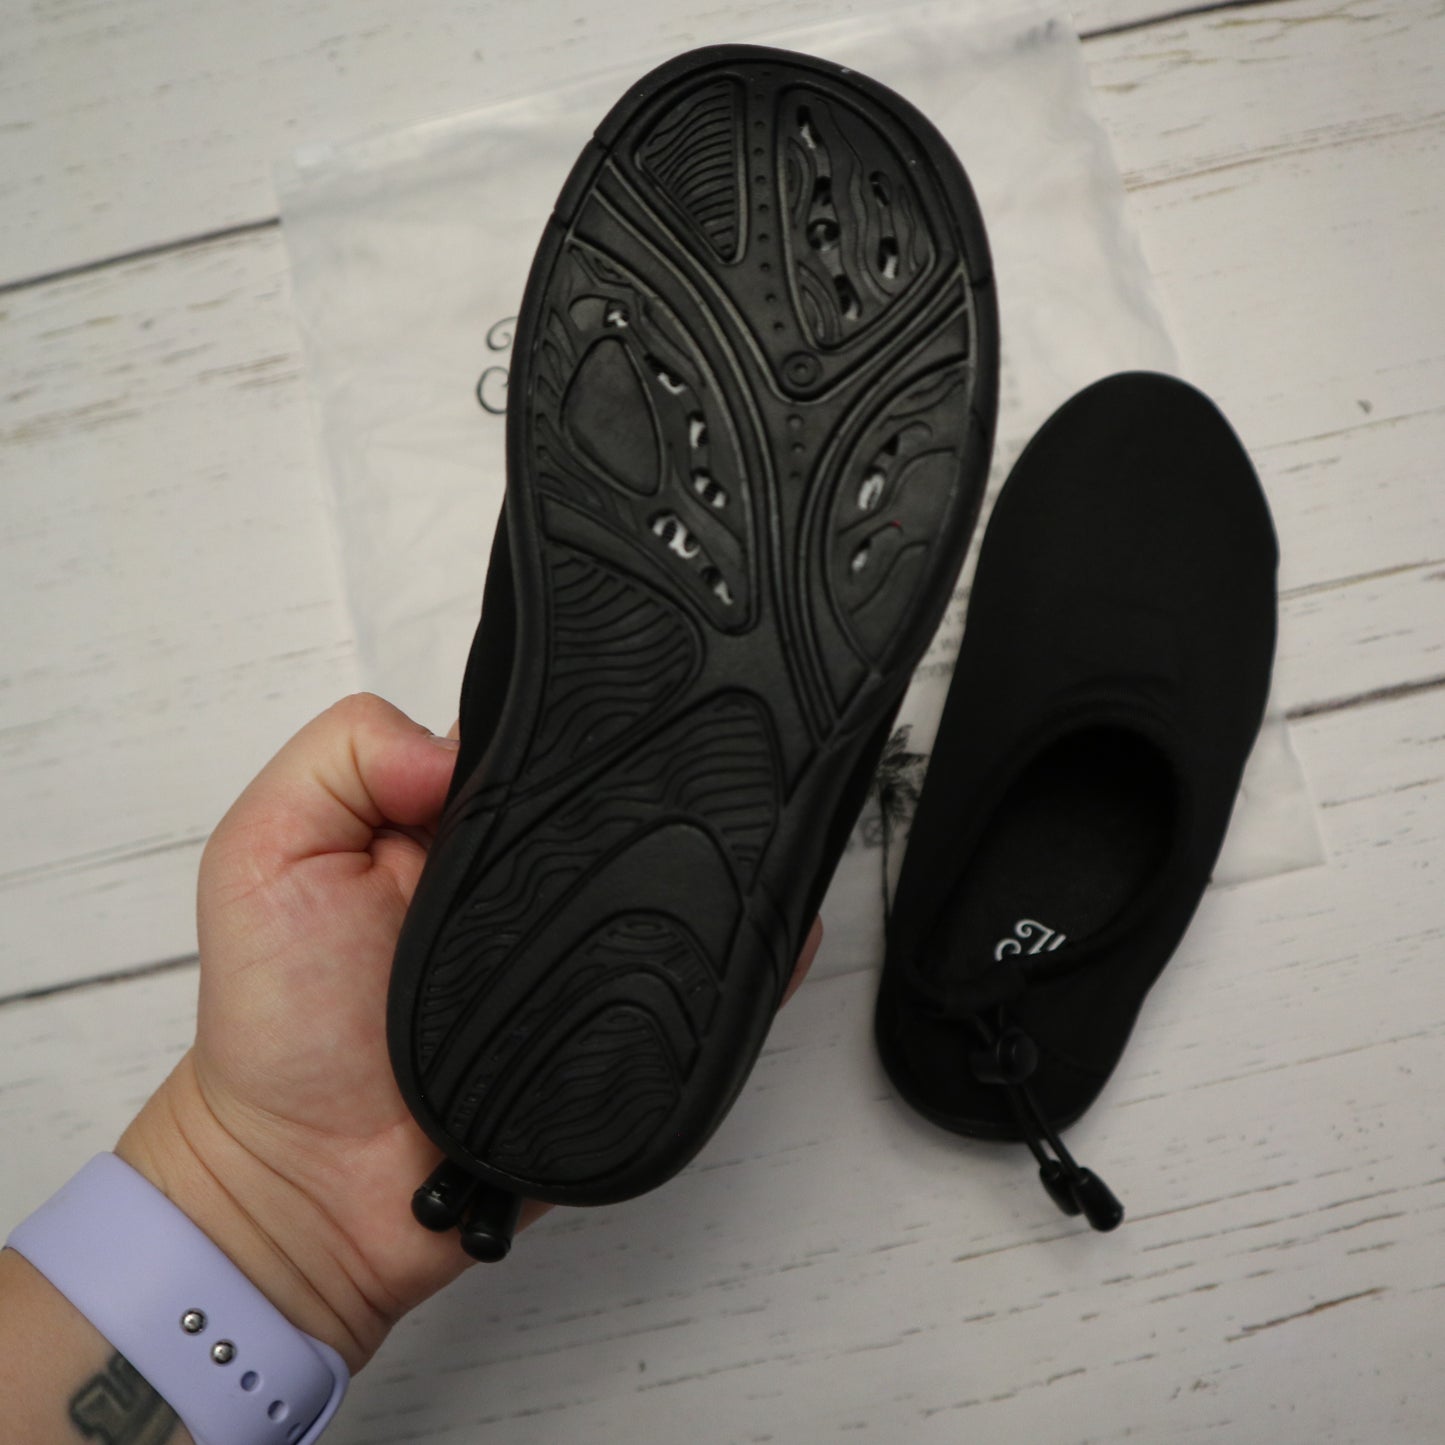 Honeysuckle - Water Shoes (11C)